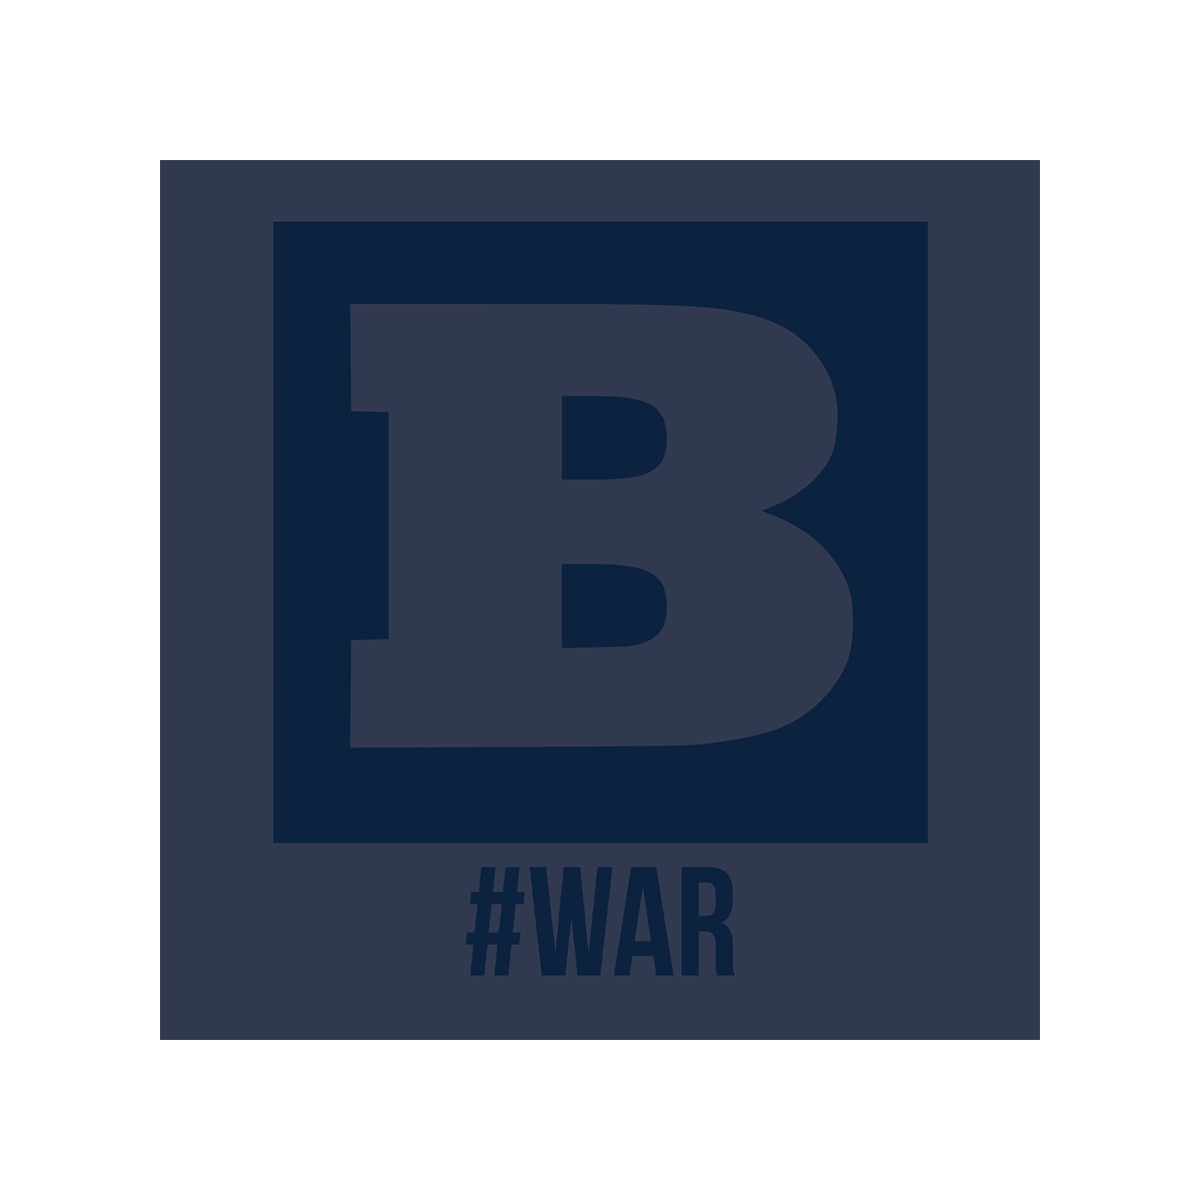 Breitbart #WAR Long Sleeve T-Shirt - Navy